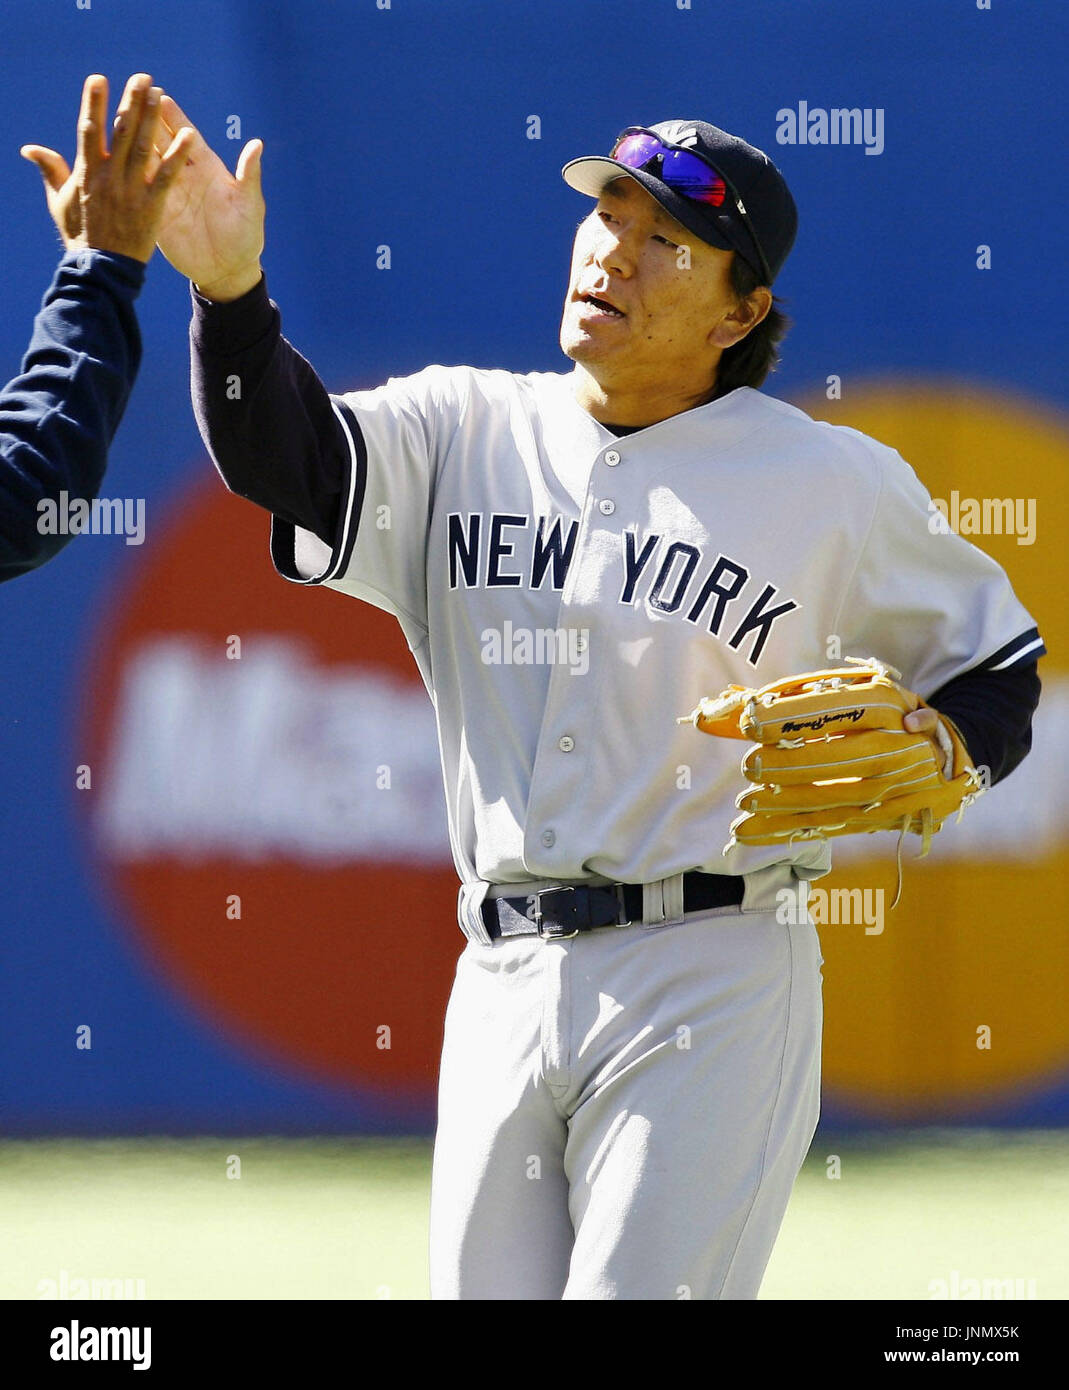 TORONTO, Canada - New York Yankees outfielder Hideki Matsui si unisce il suo compagno di squadra in festa dopo il team di 3-1 conquistare il Toronto Blue Jays presso il Rogers Centre il 19 aprile. (MLB) (Kyodo) Foto Stock